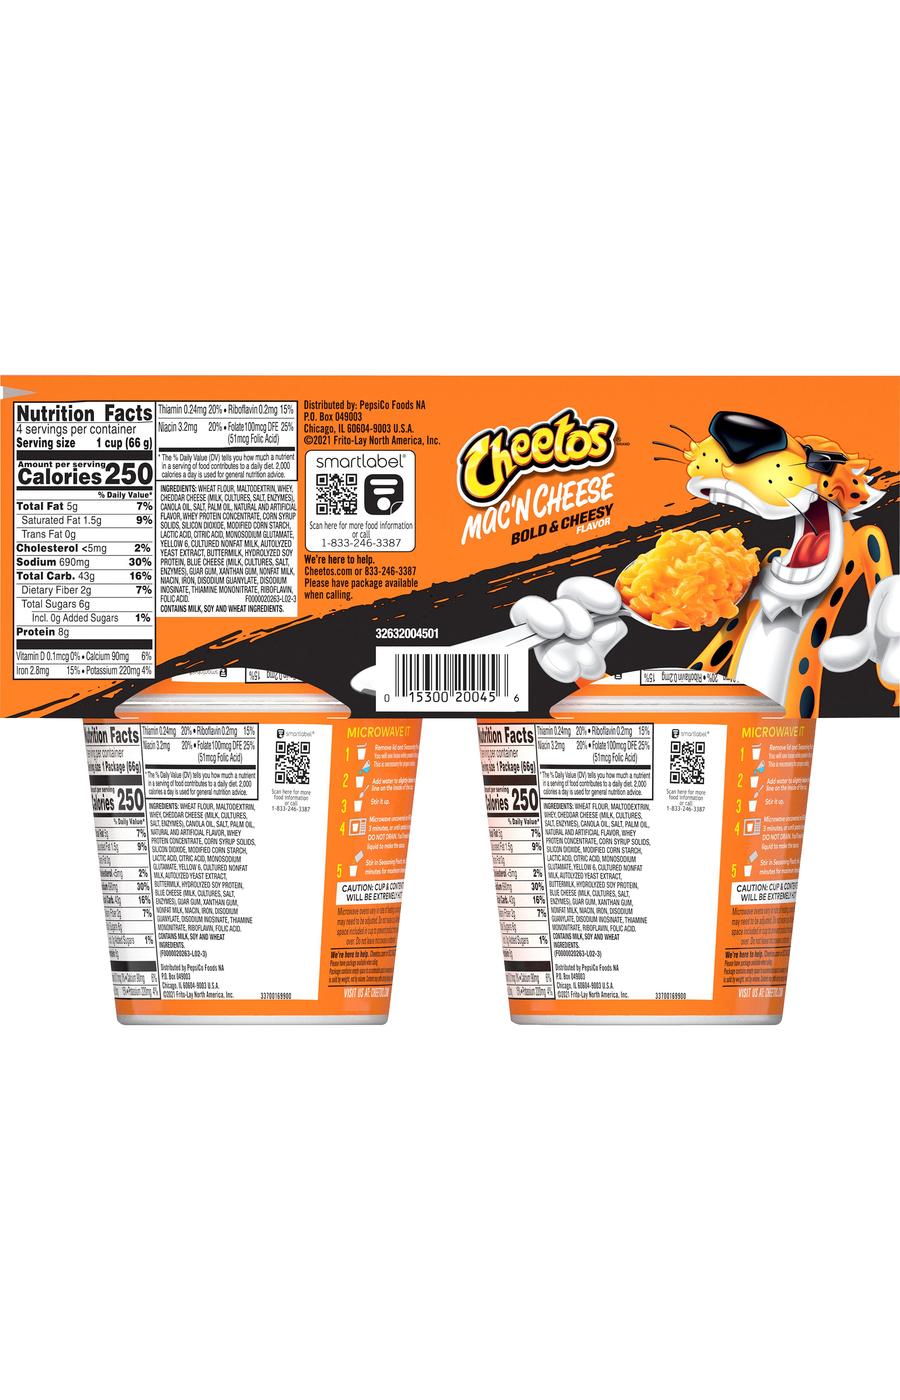 Cheetos Mac 'N Cheese Bold & Cheesy; image 2 of 3